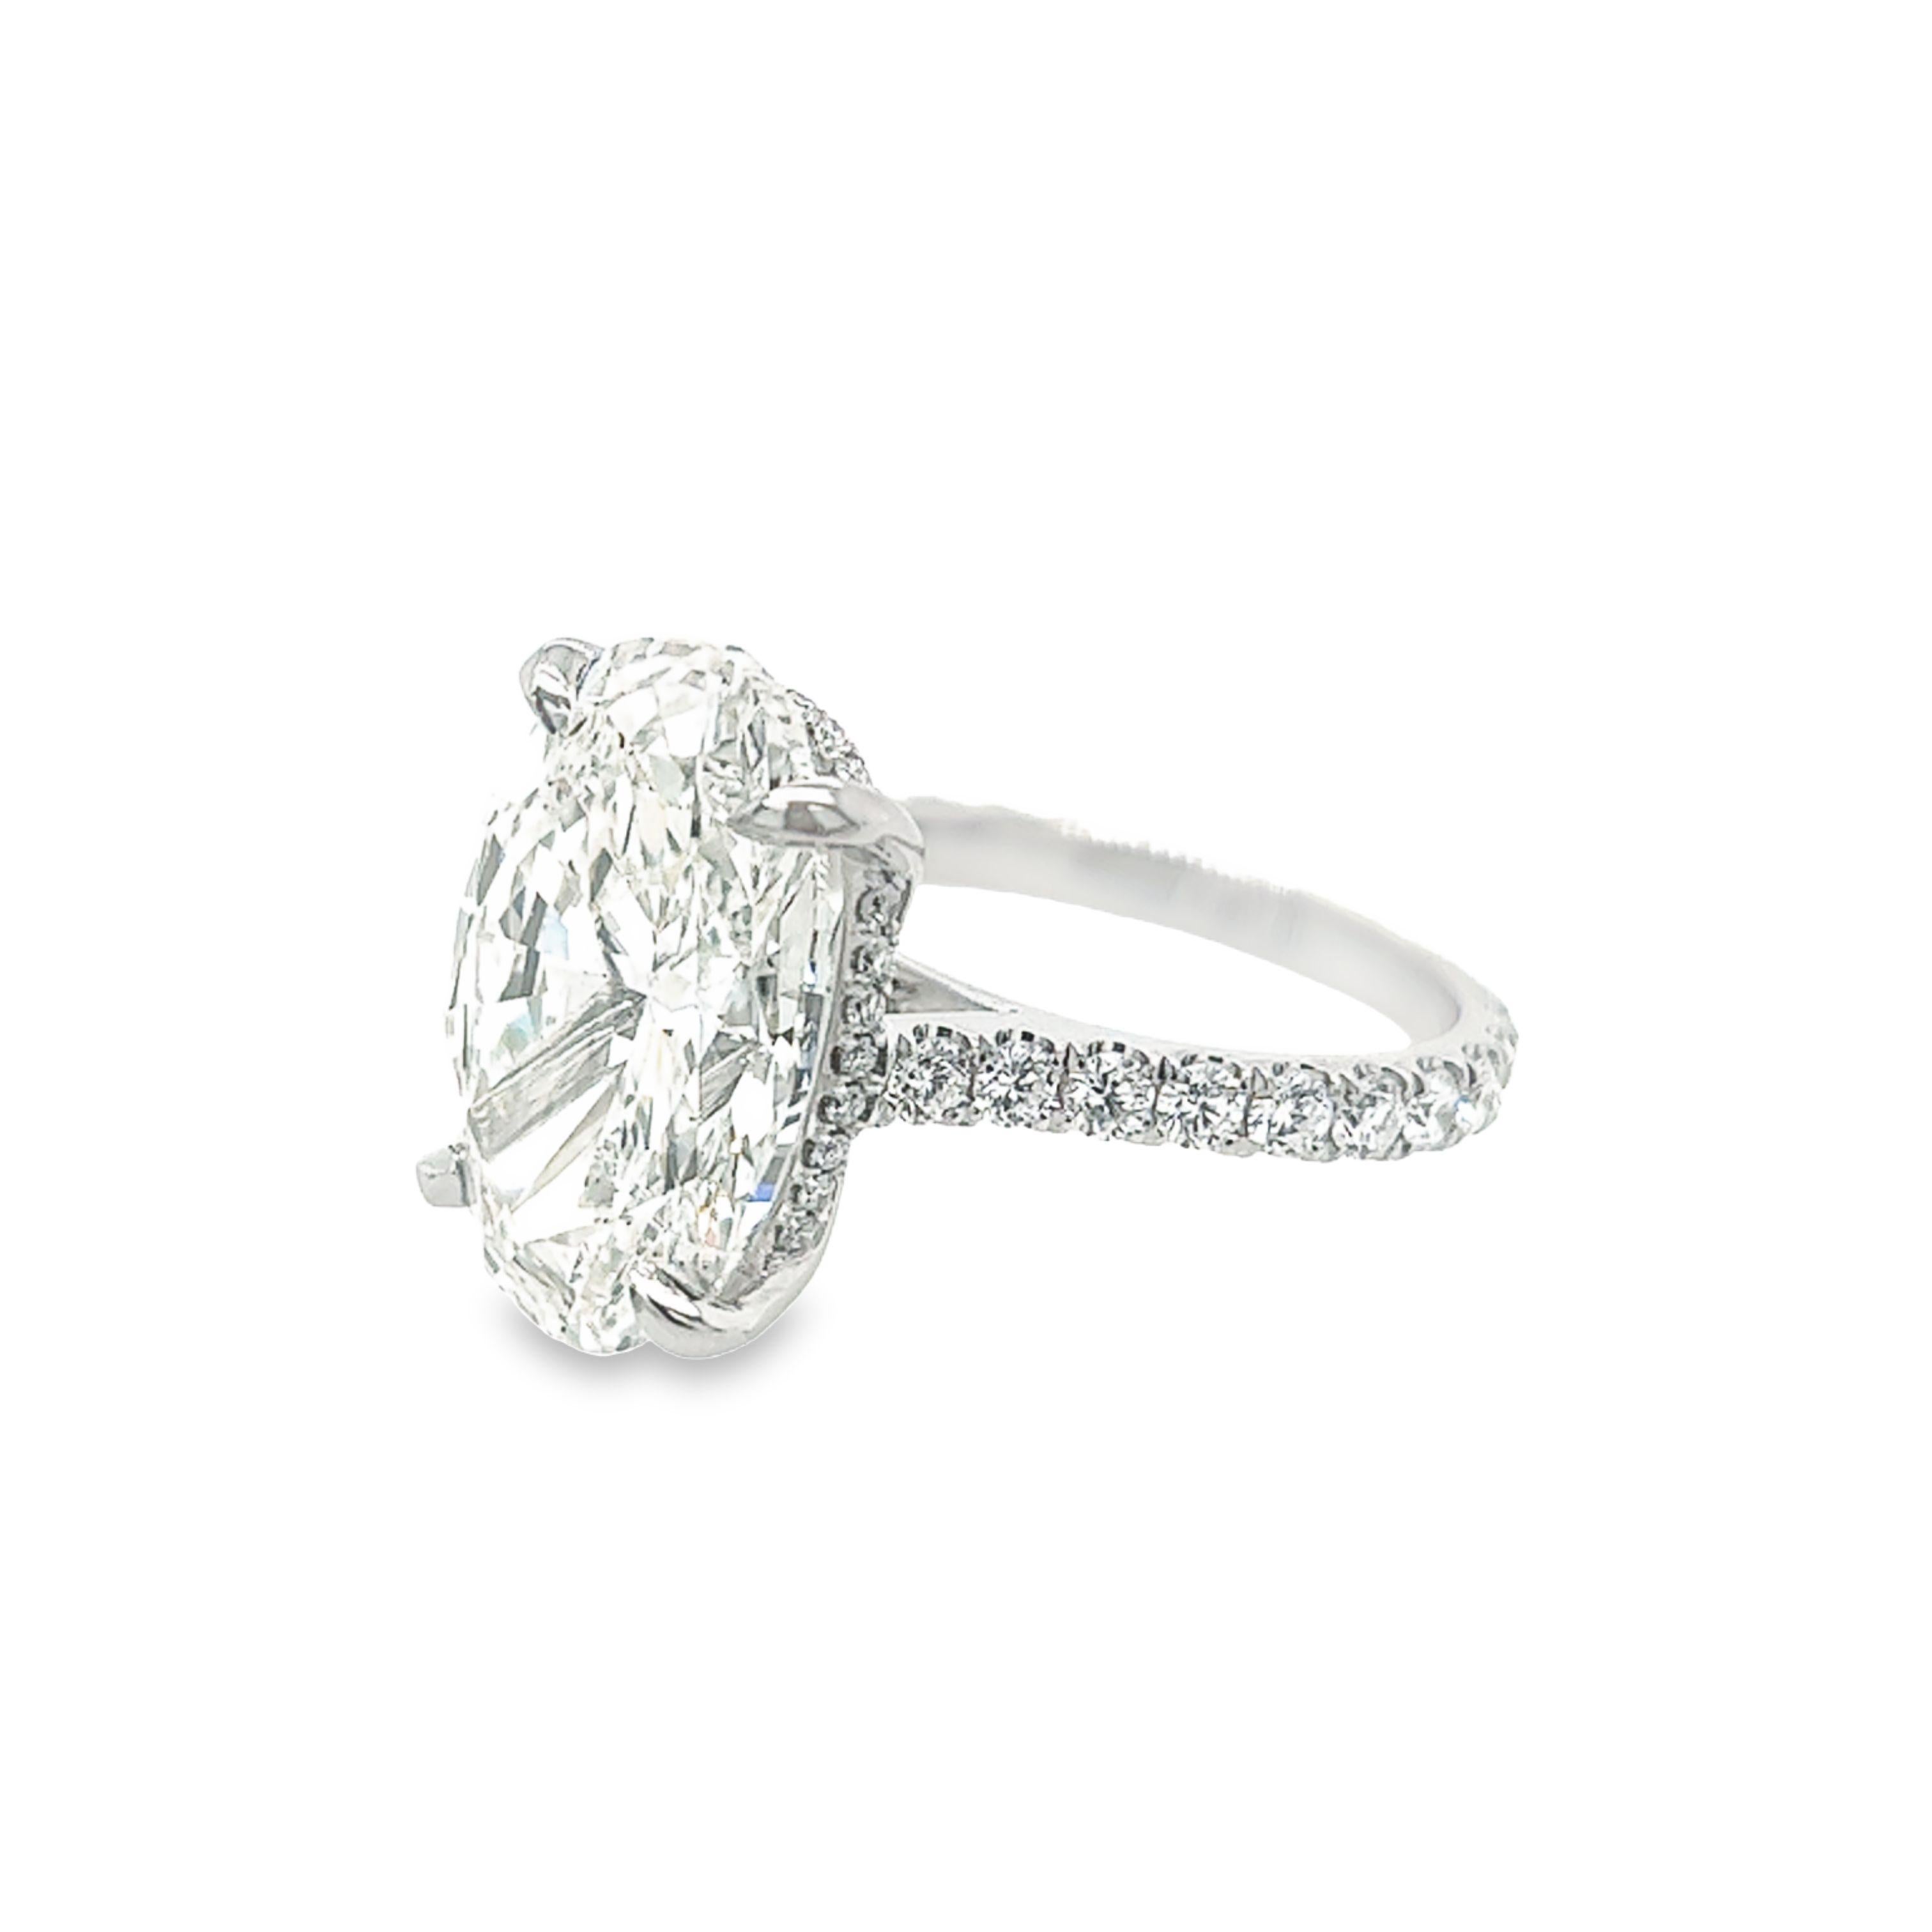 10 carat oval diamond ring